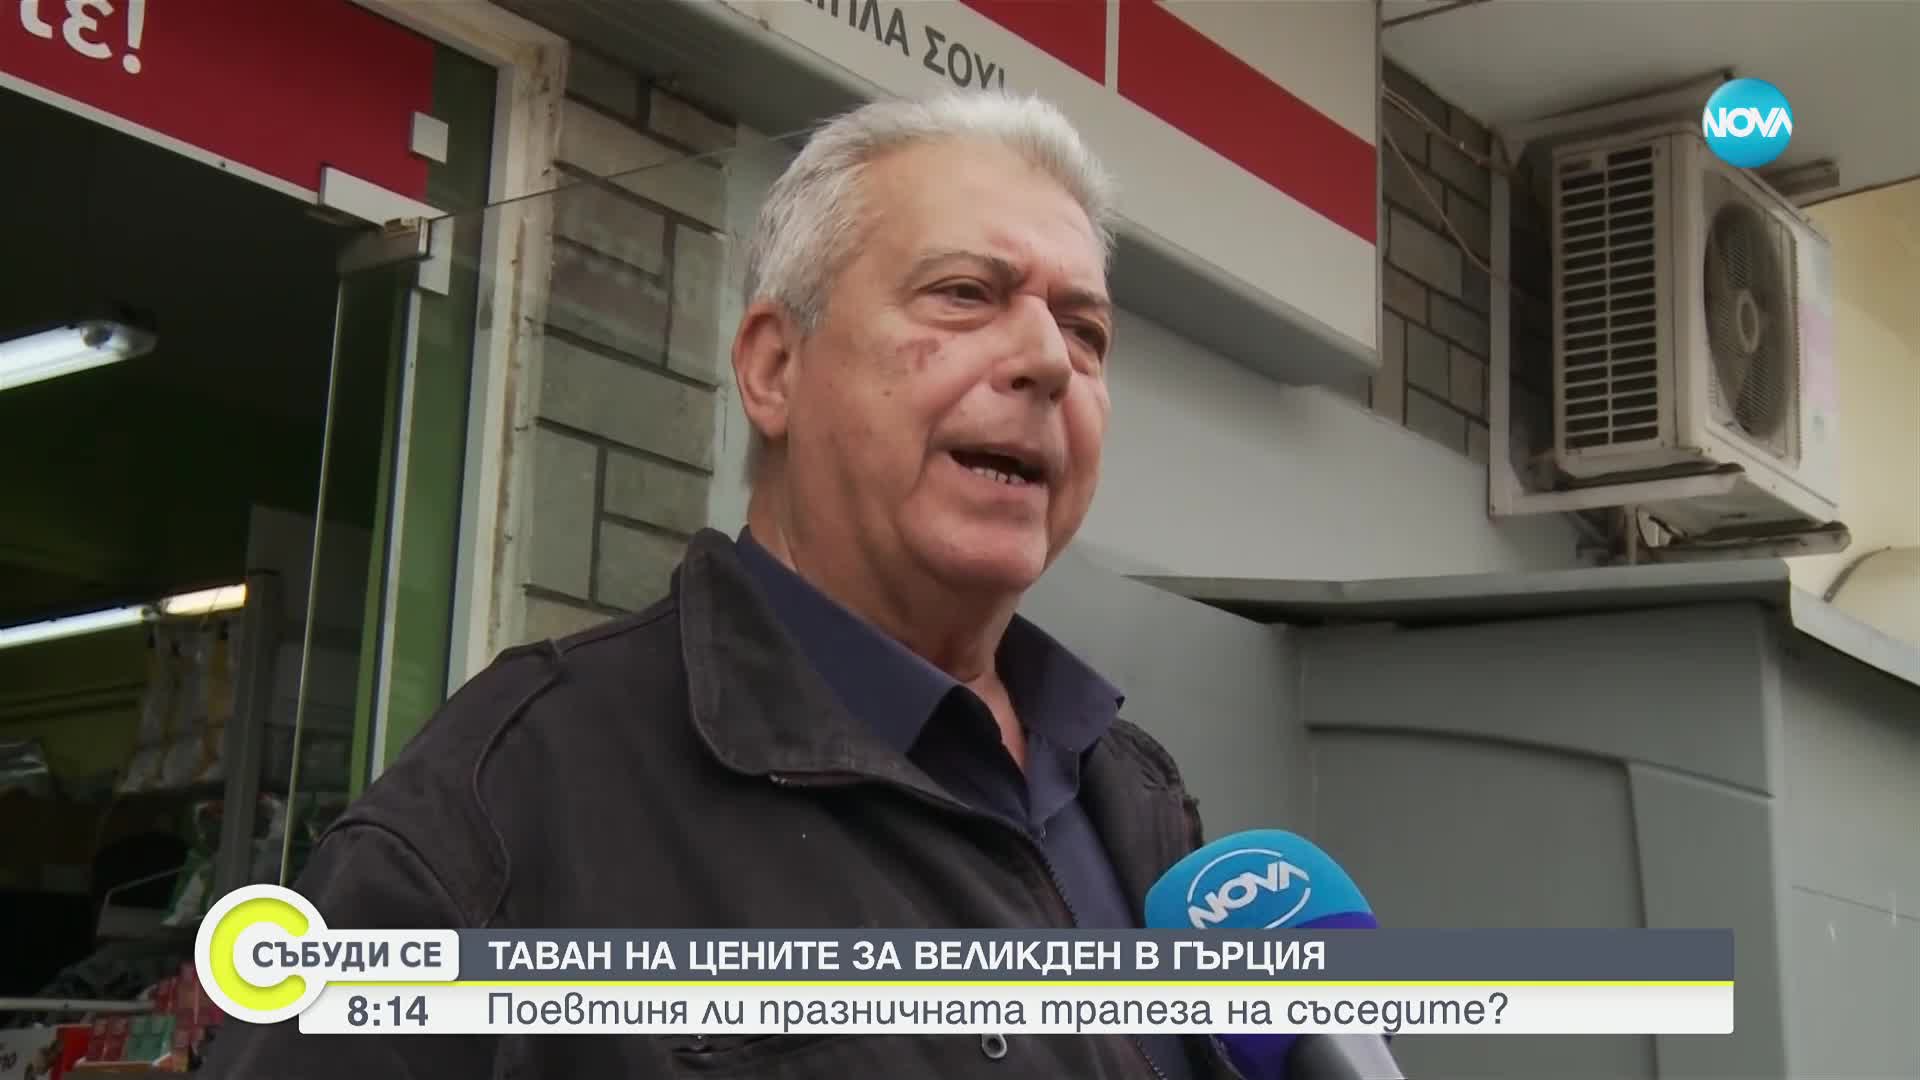 Гръцкото правителство въведе таван на цените на някои стоки за Великден